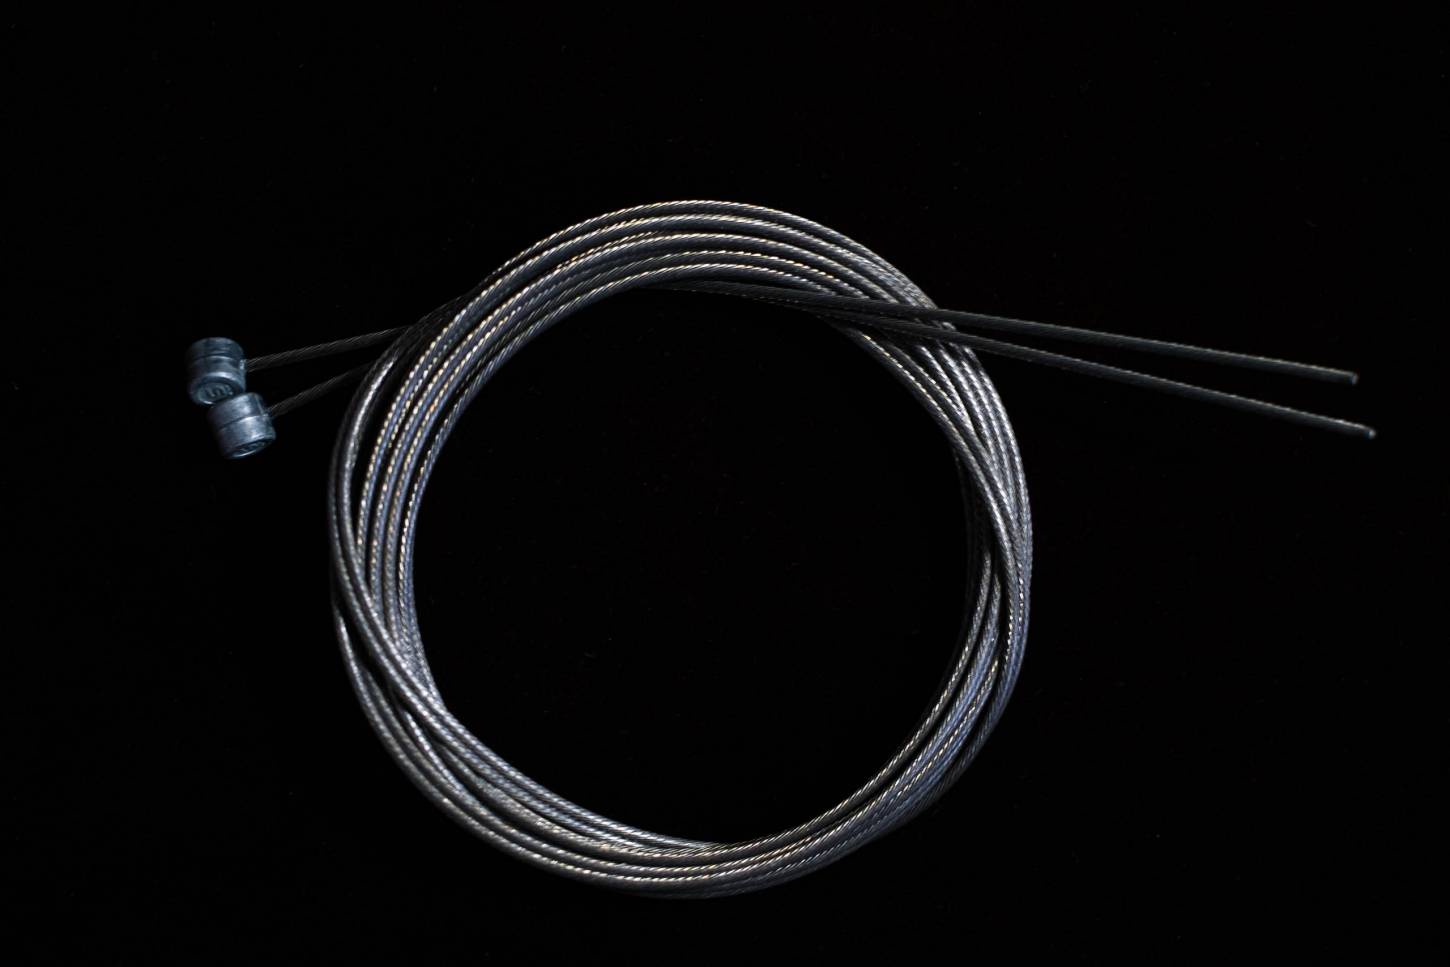 Shimano câble intérieur câble de changement de vitesse câble de frein ampoule mamelon rouleau mamelon SRAM vélo de route VTT